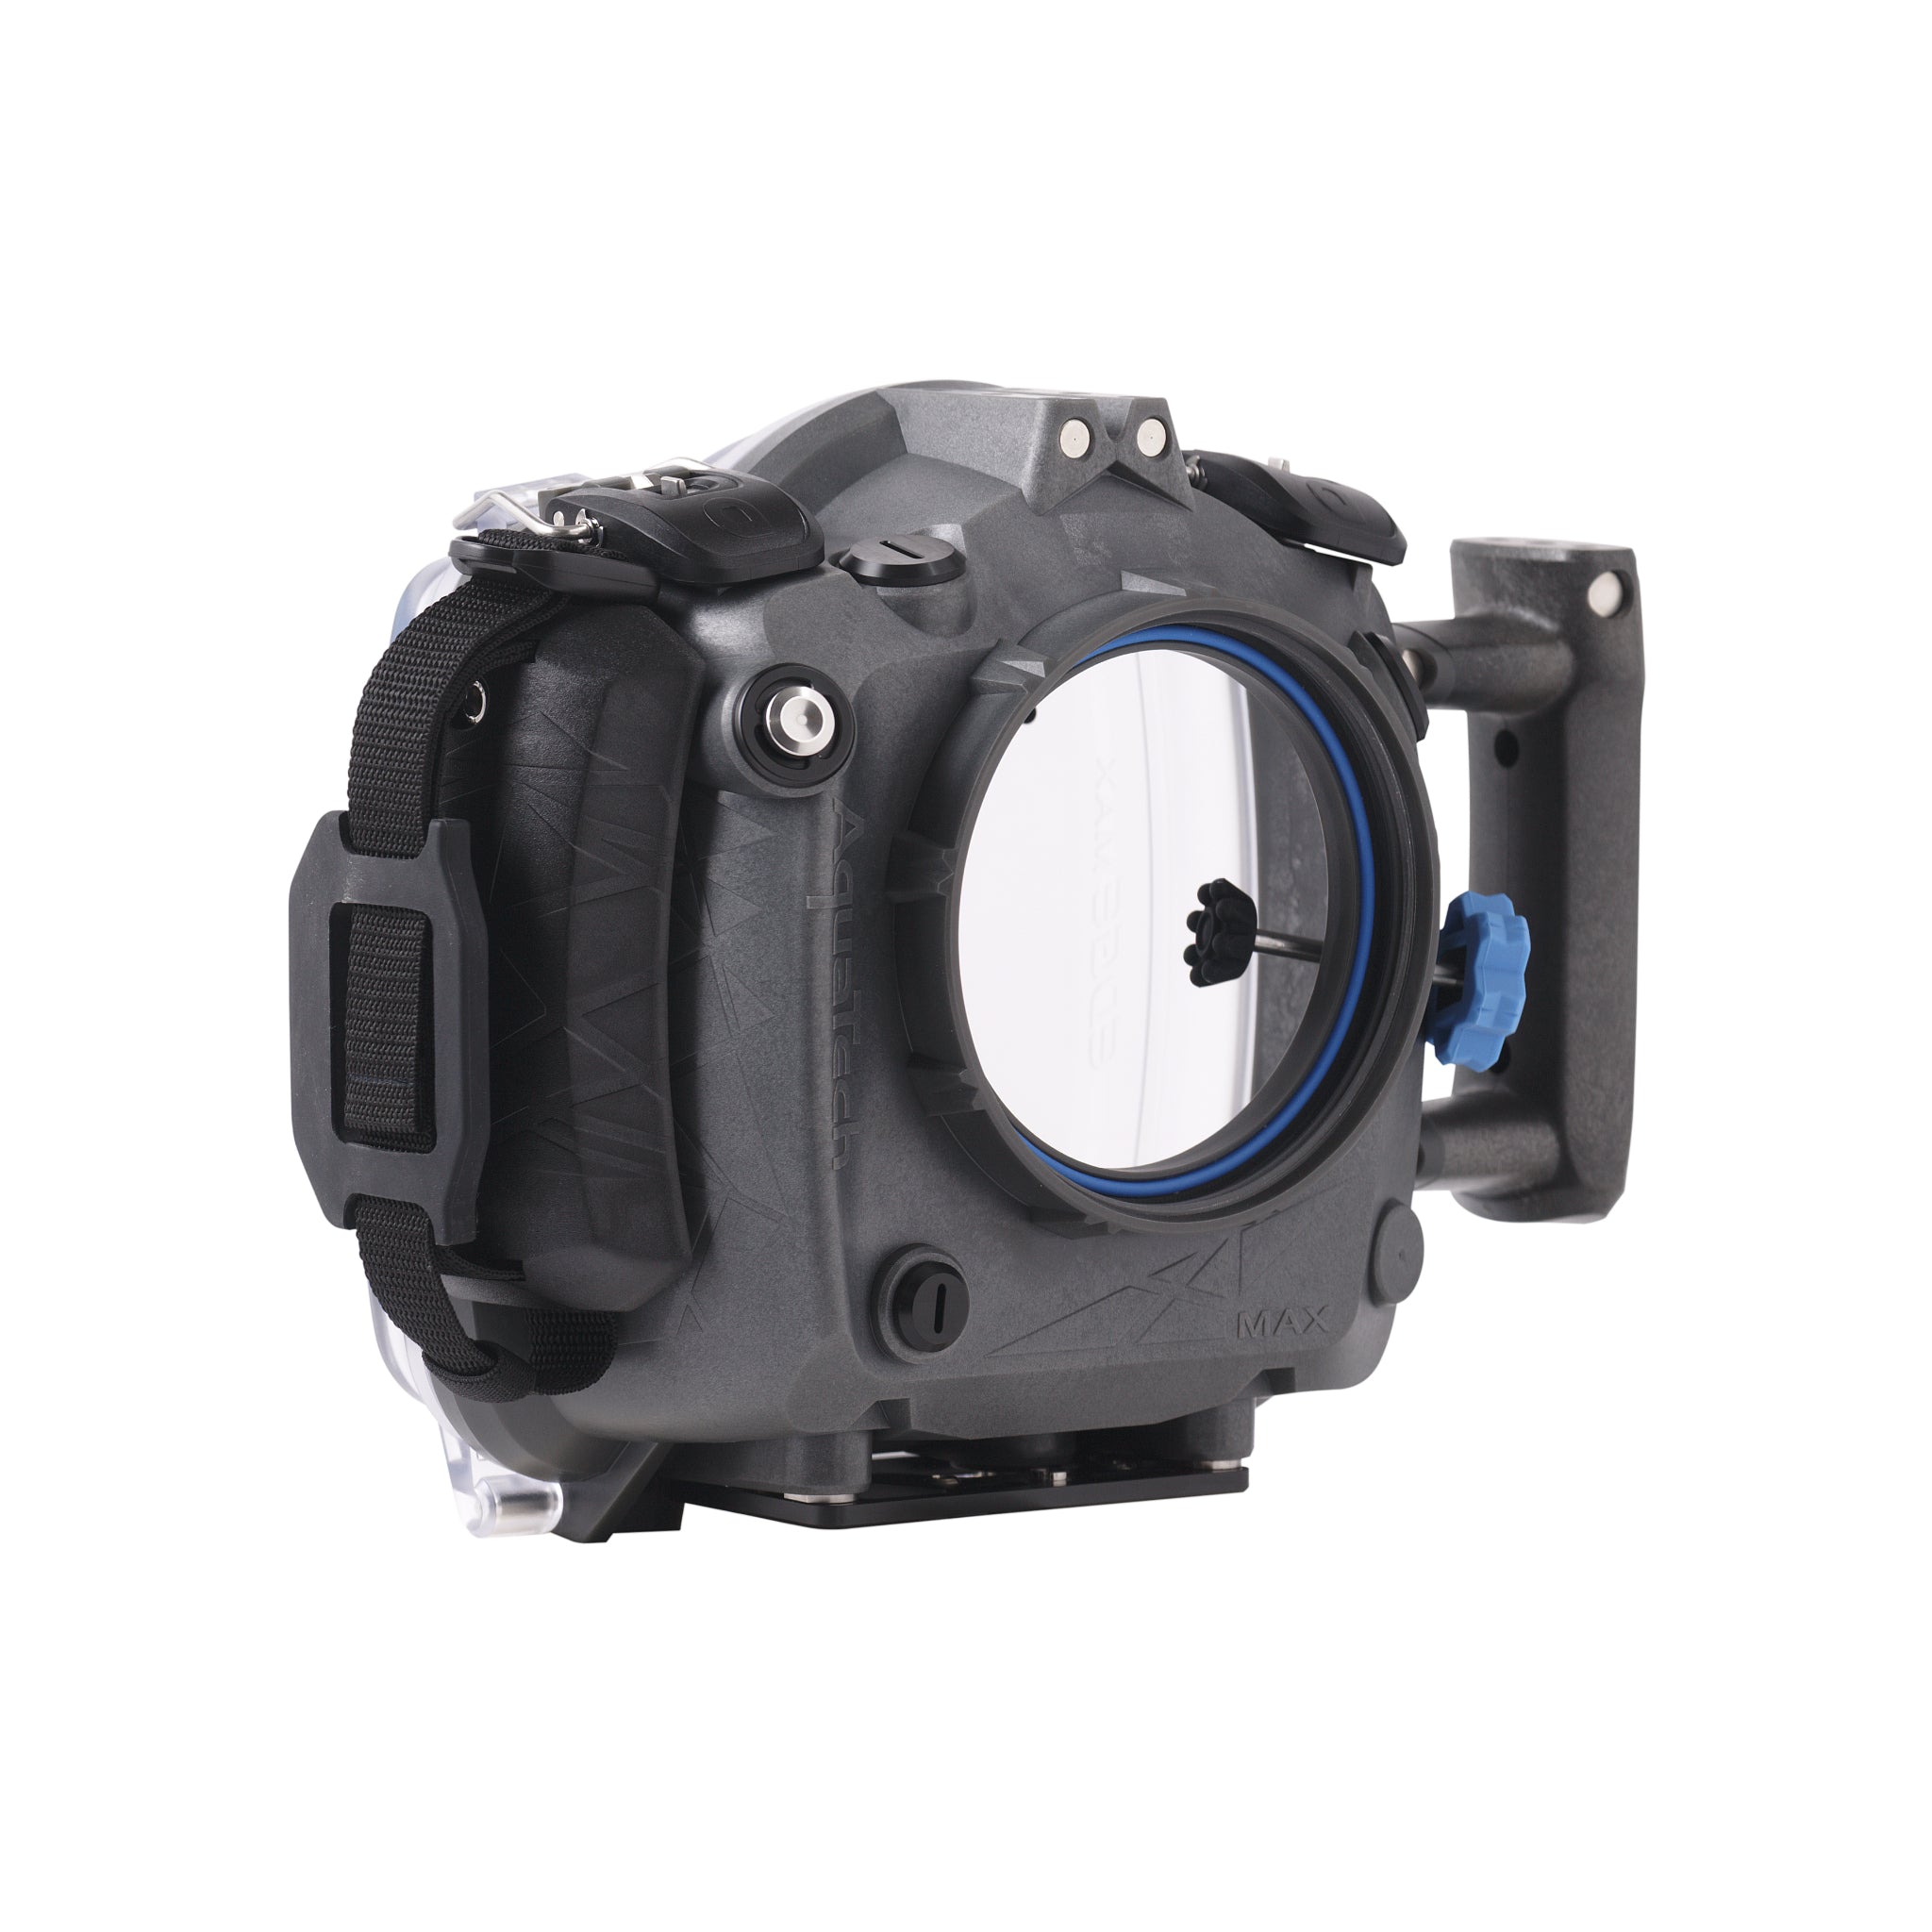 EDGE MAX Water Housing for Nikon Z9 Camera | Aquatech – AquaTech 